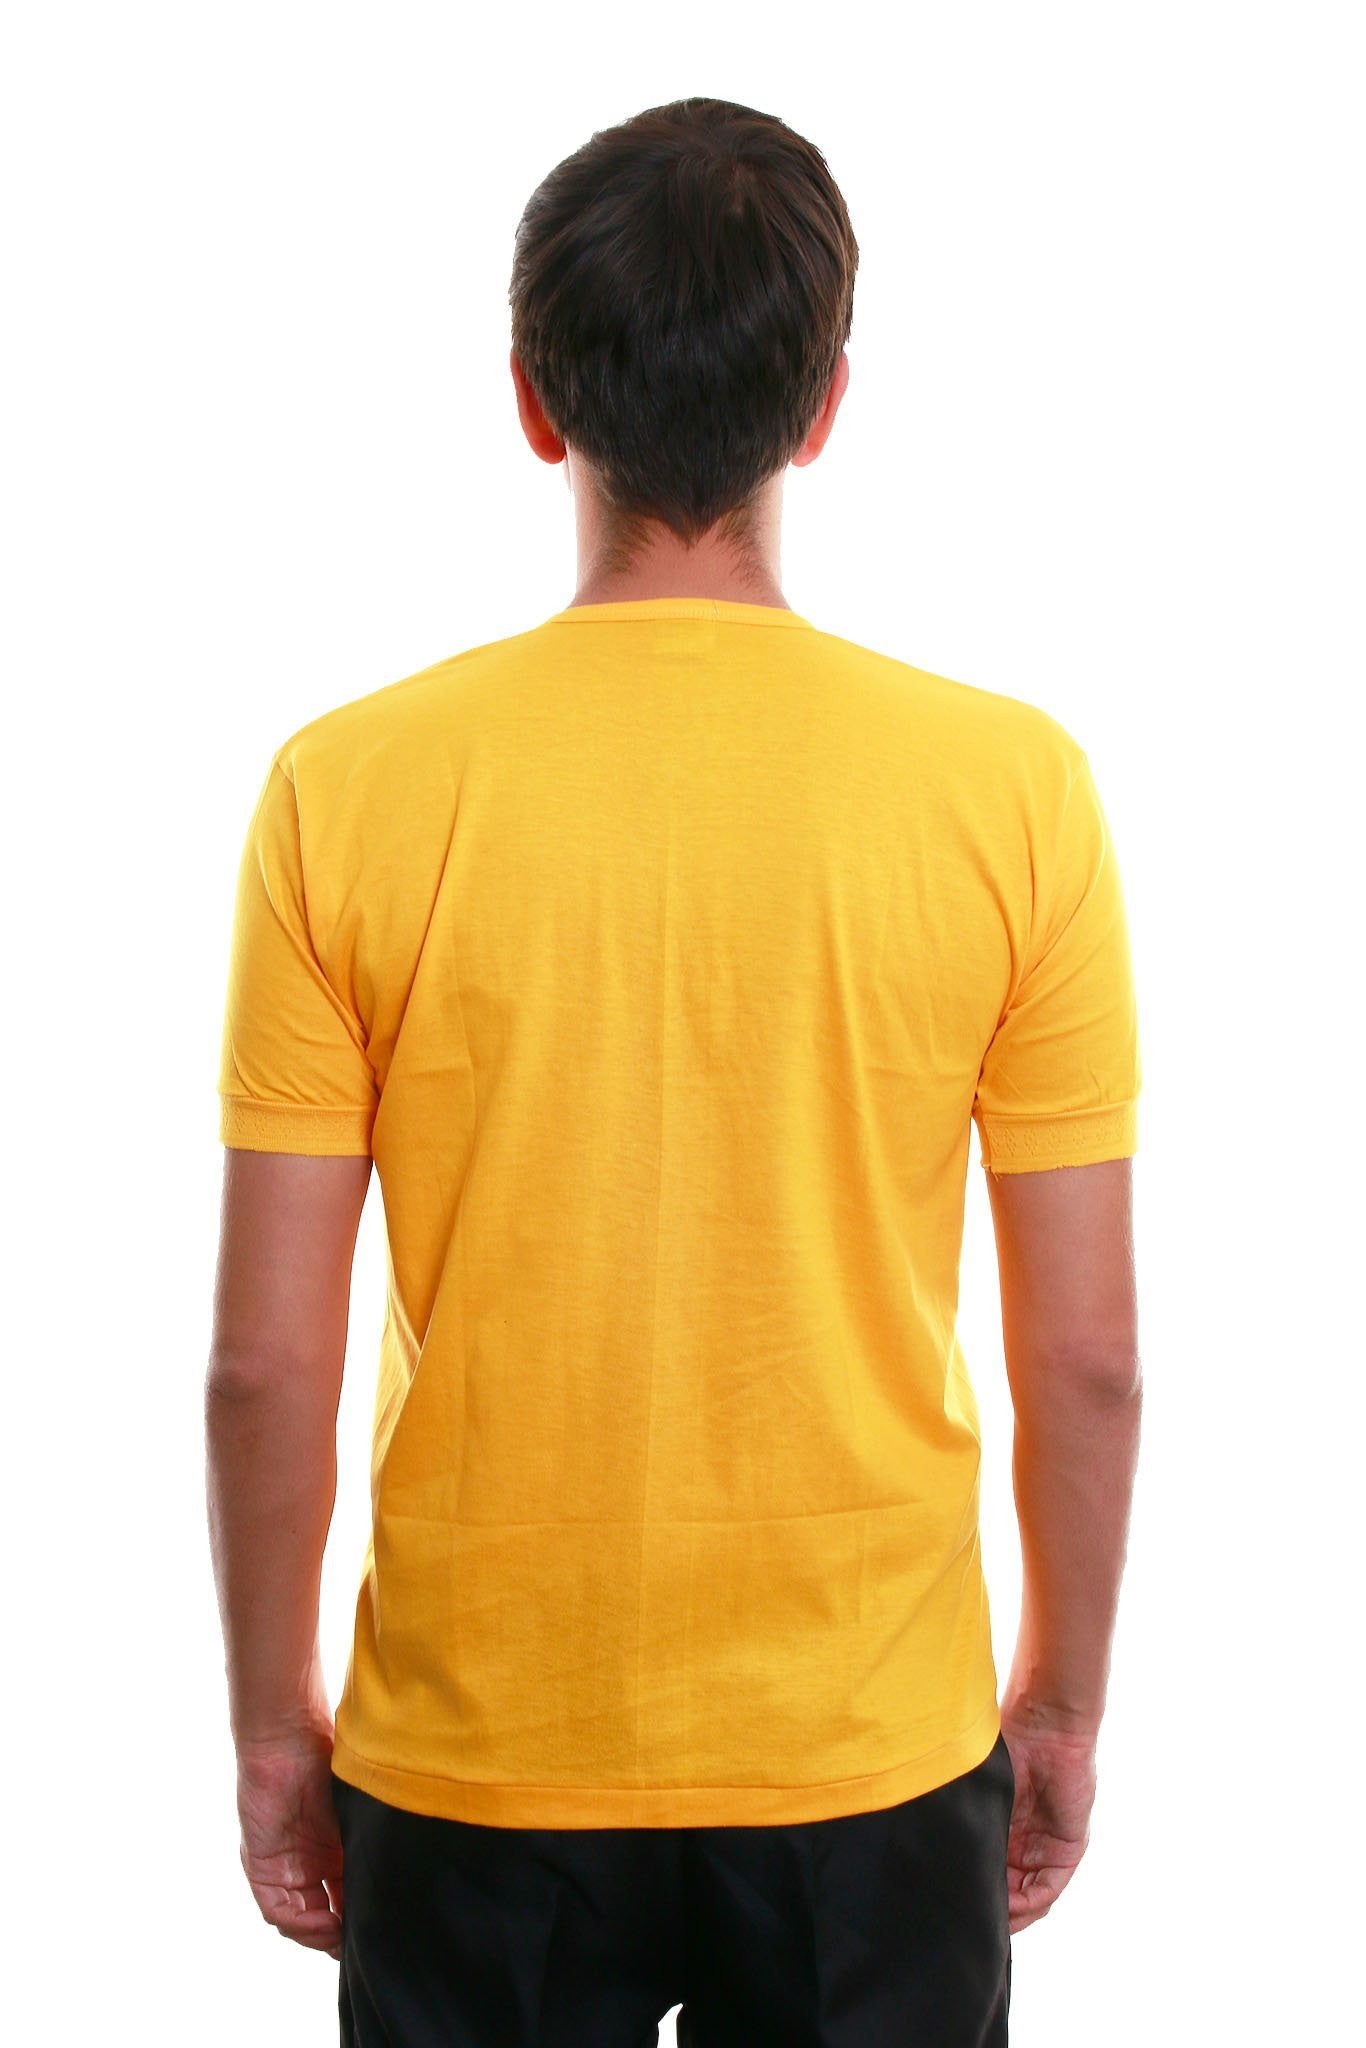 BARONG WAREHOUSE - MUS5 - Camisa de Chino - Short-Sleeve - Yellow Gold